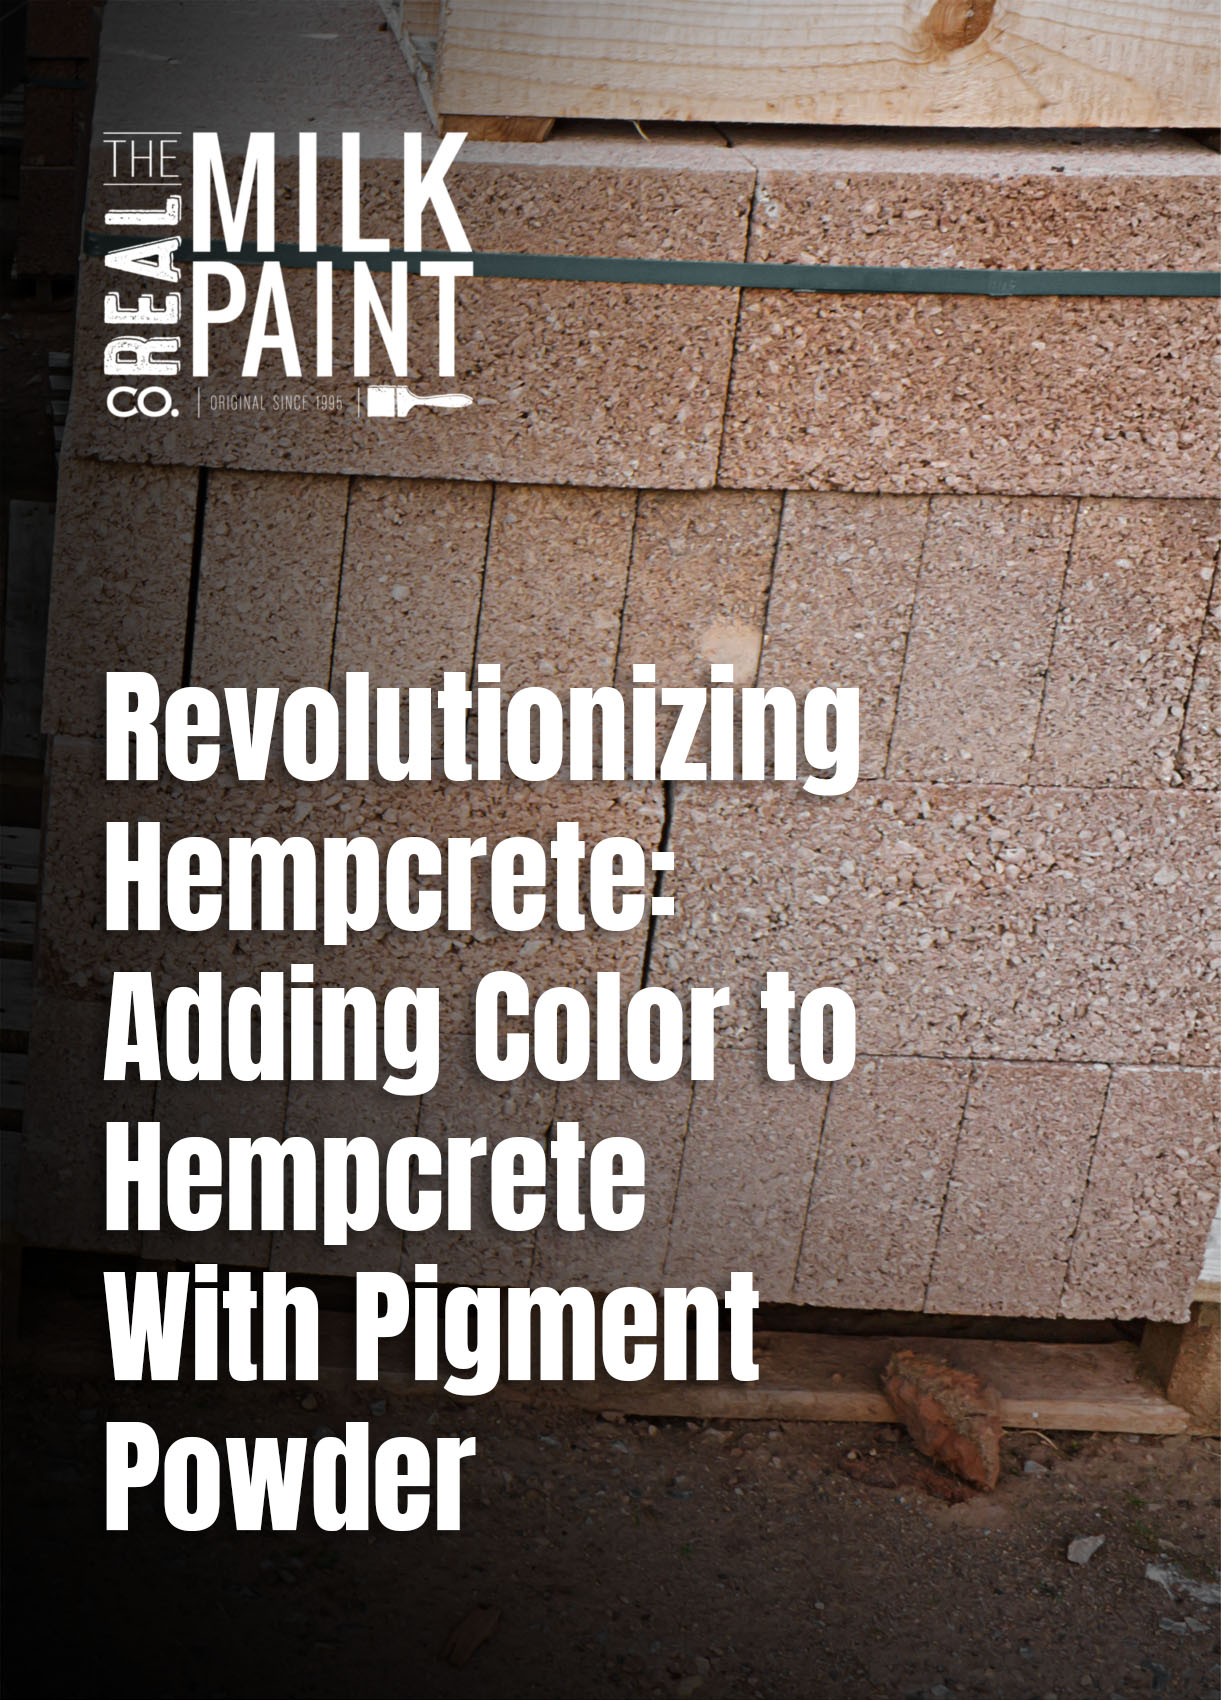 Revolutionizing Hempcrete - Adding Color to Hempcrete With Pigment Powder